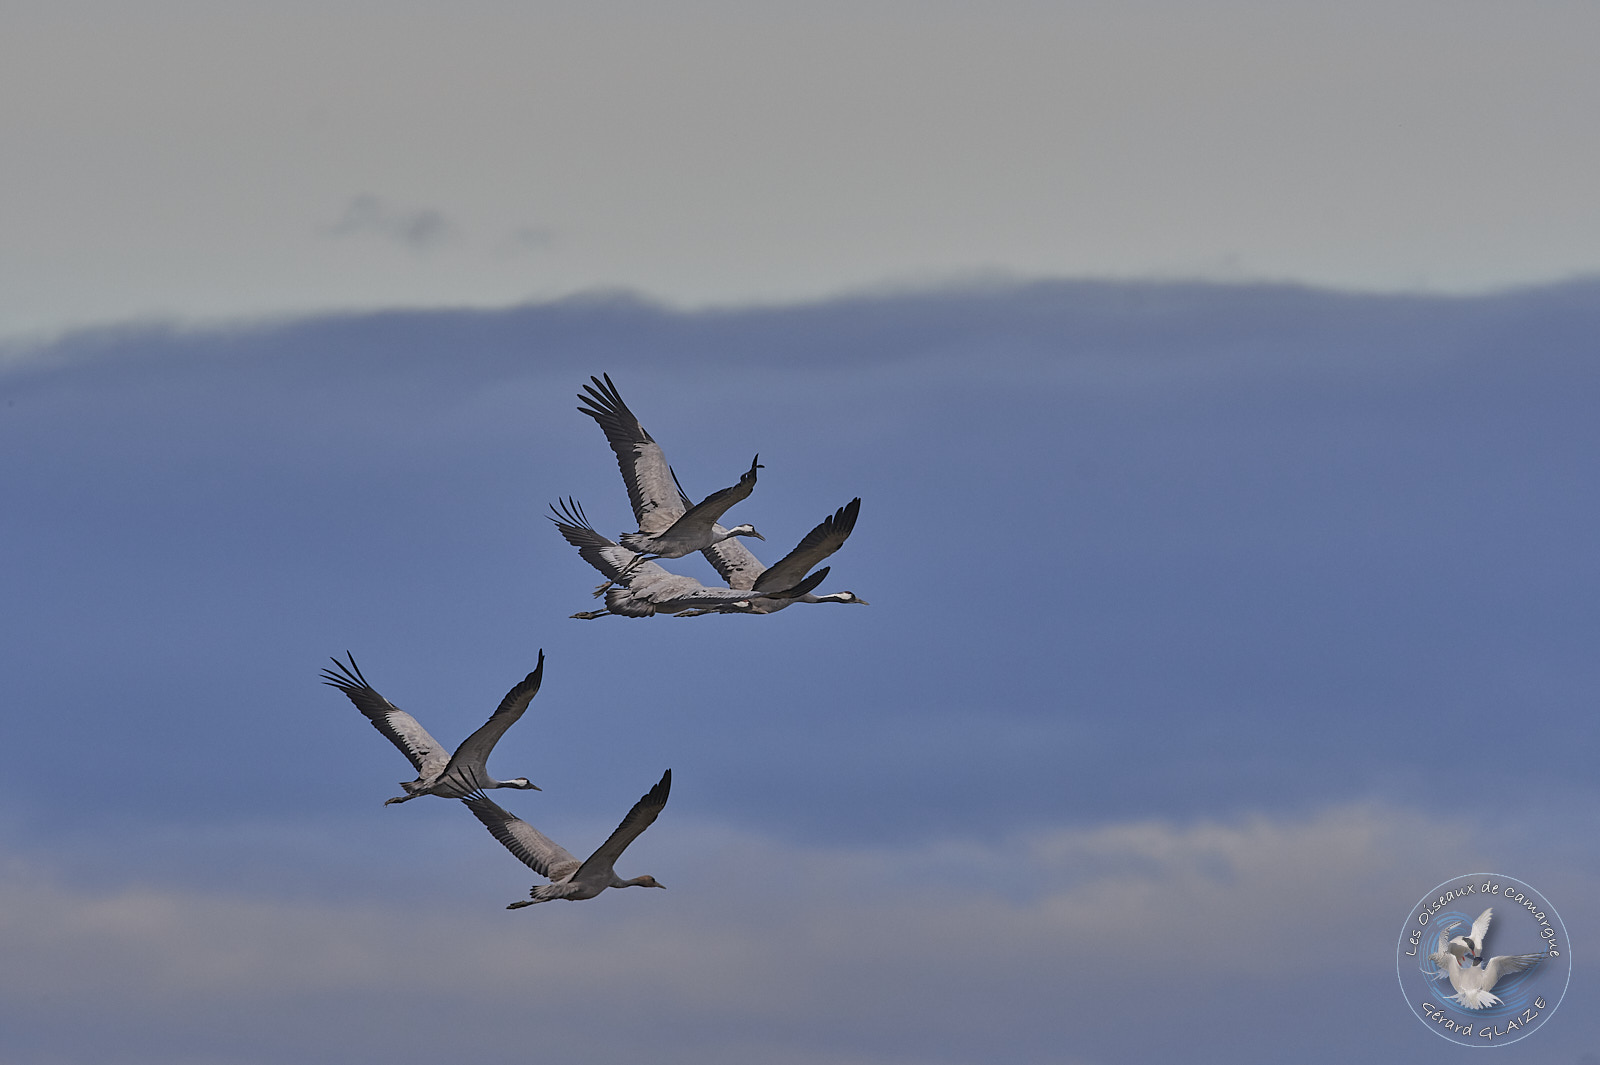 Vol de Grues cendrées - Flight of Common Cranes